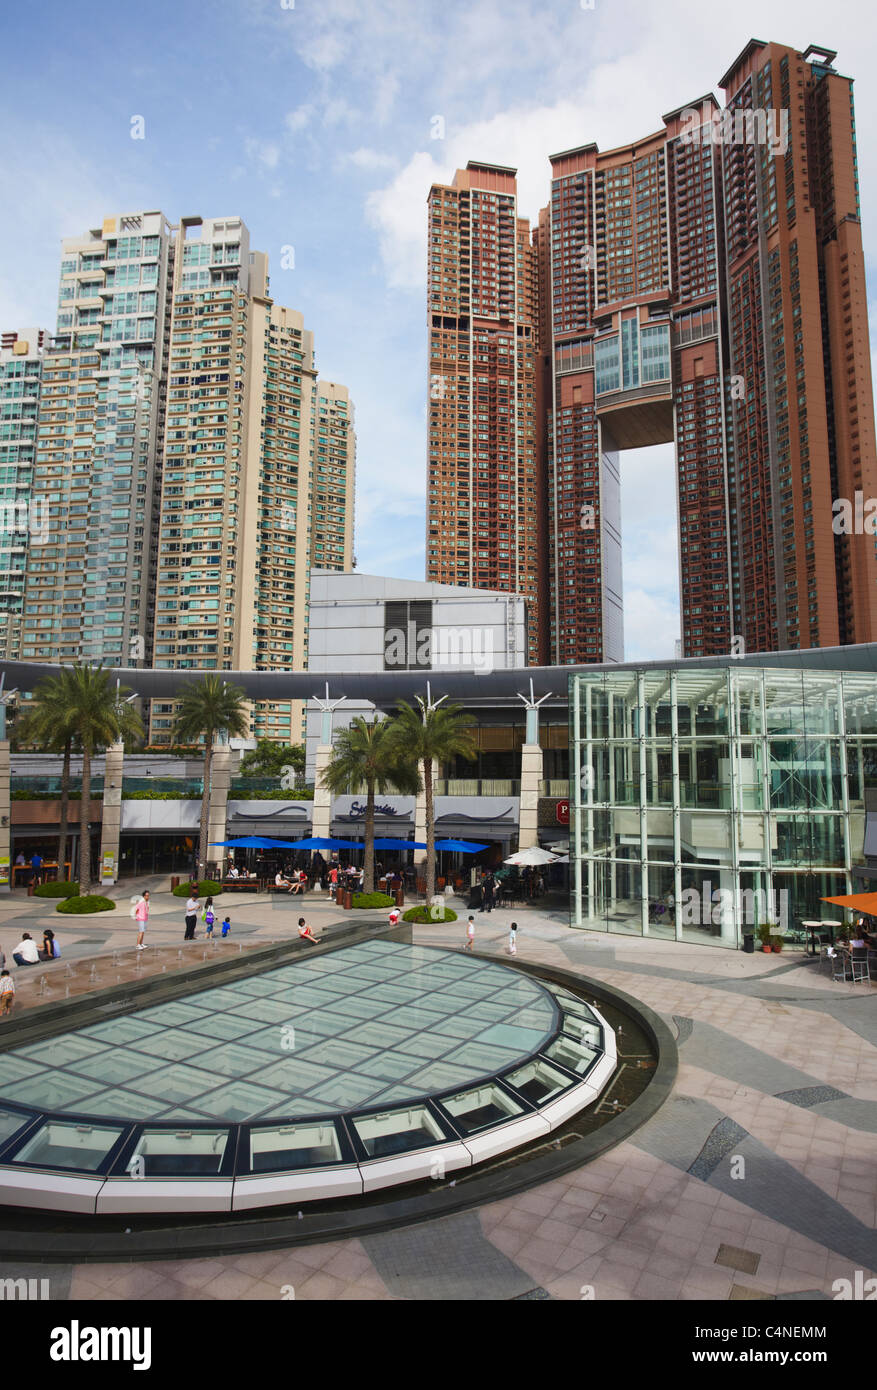 Civic Square, Elements Mall, West Kowloon, Hong Kong, China Stock Photo